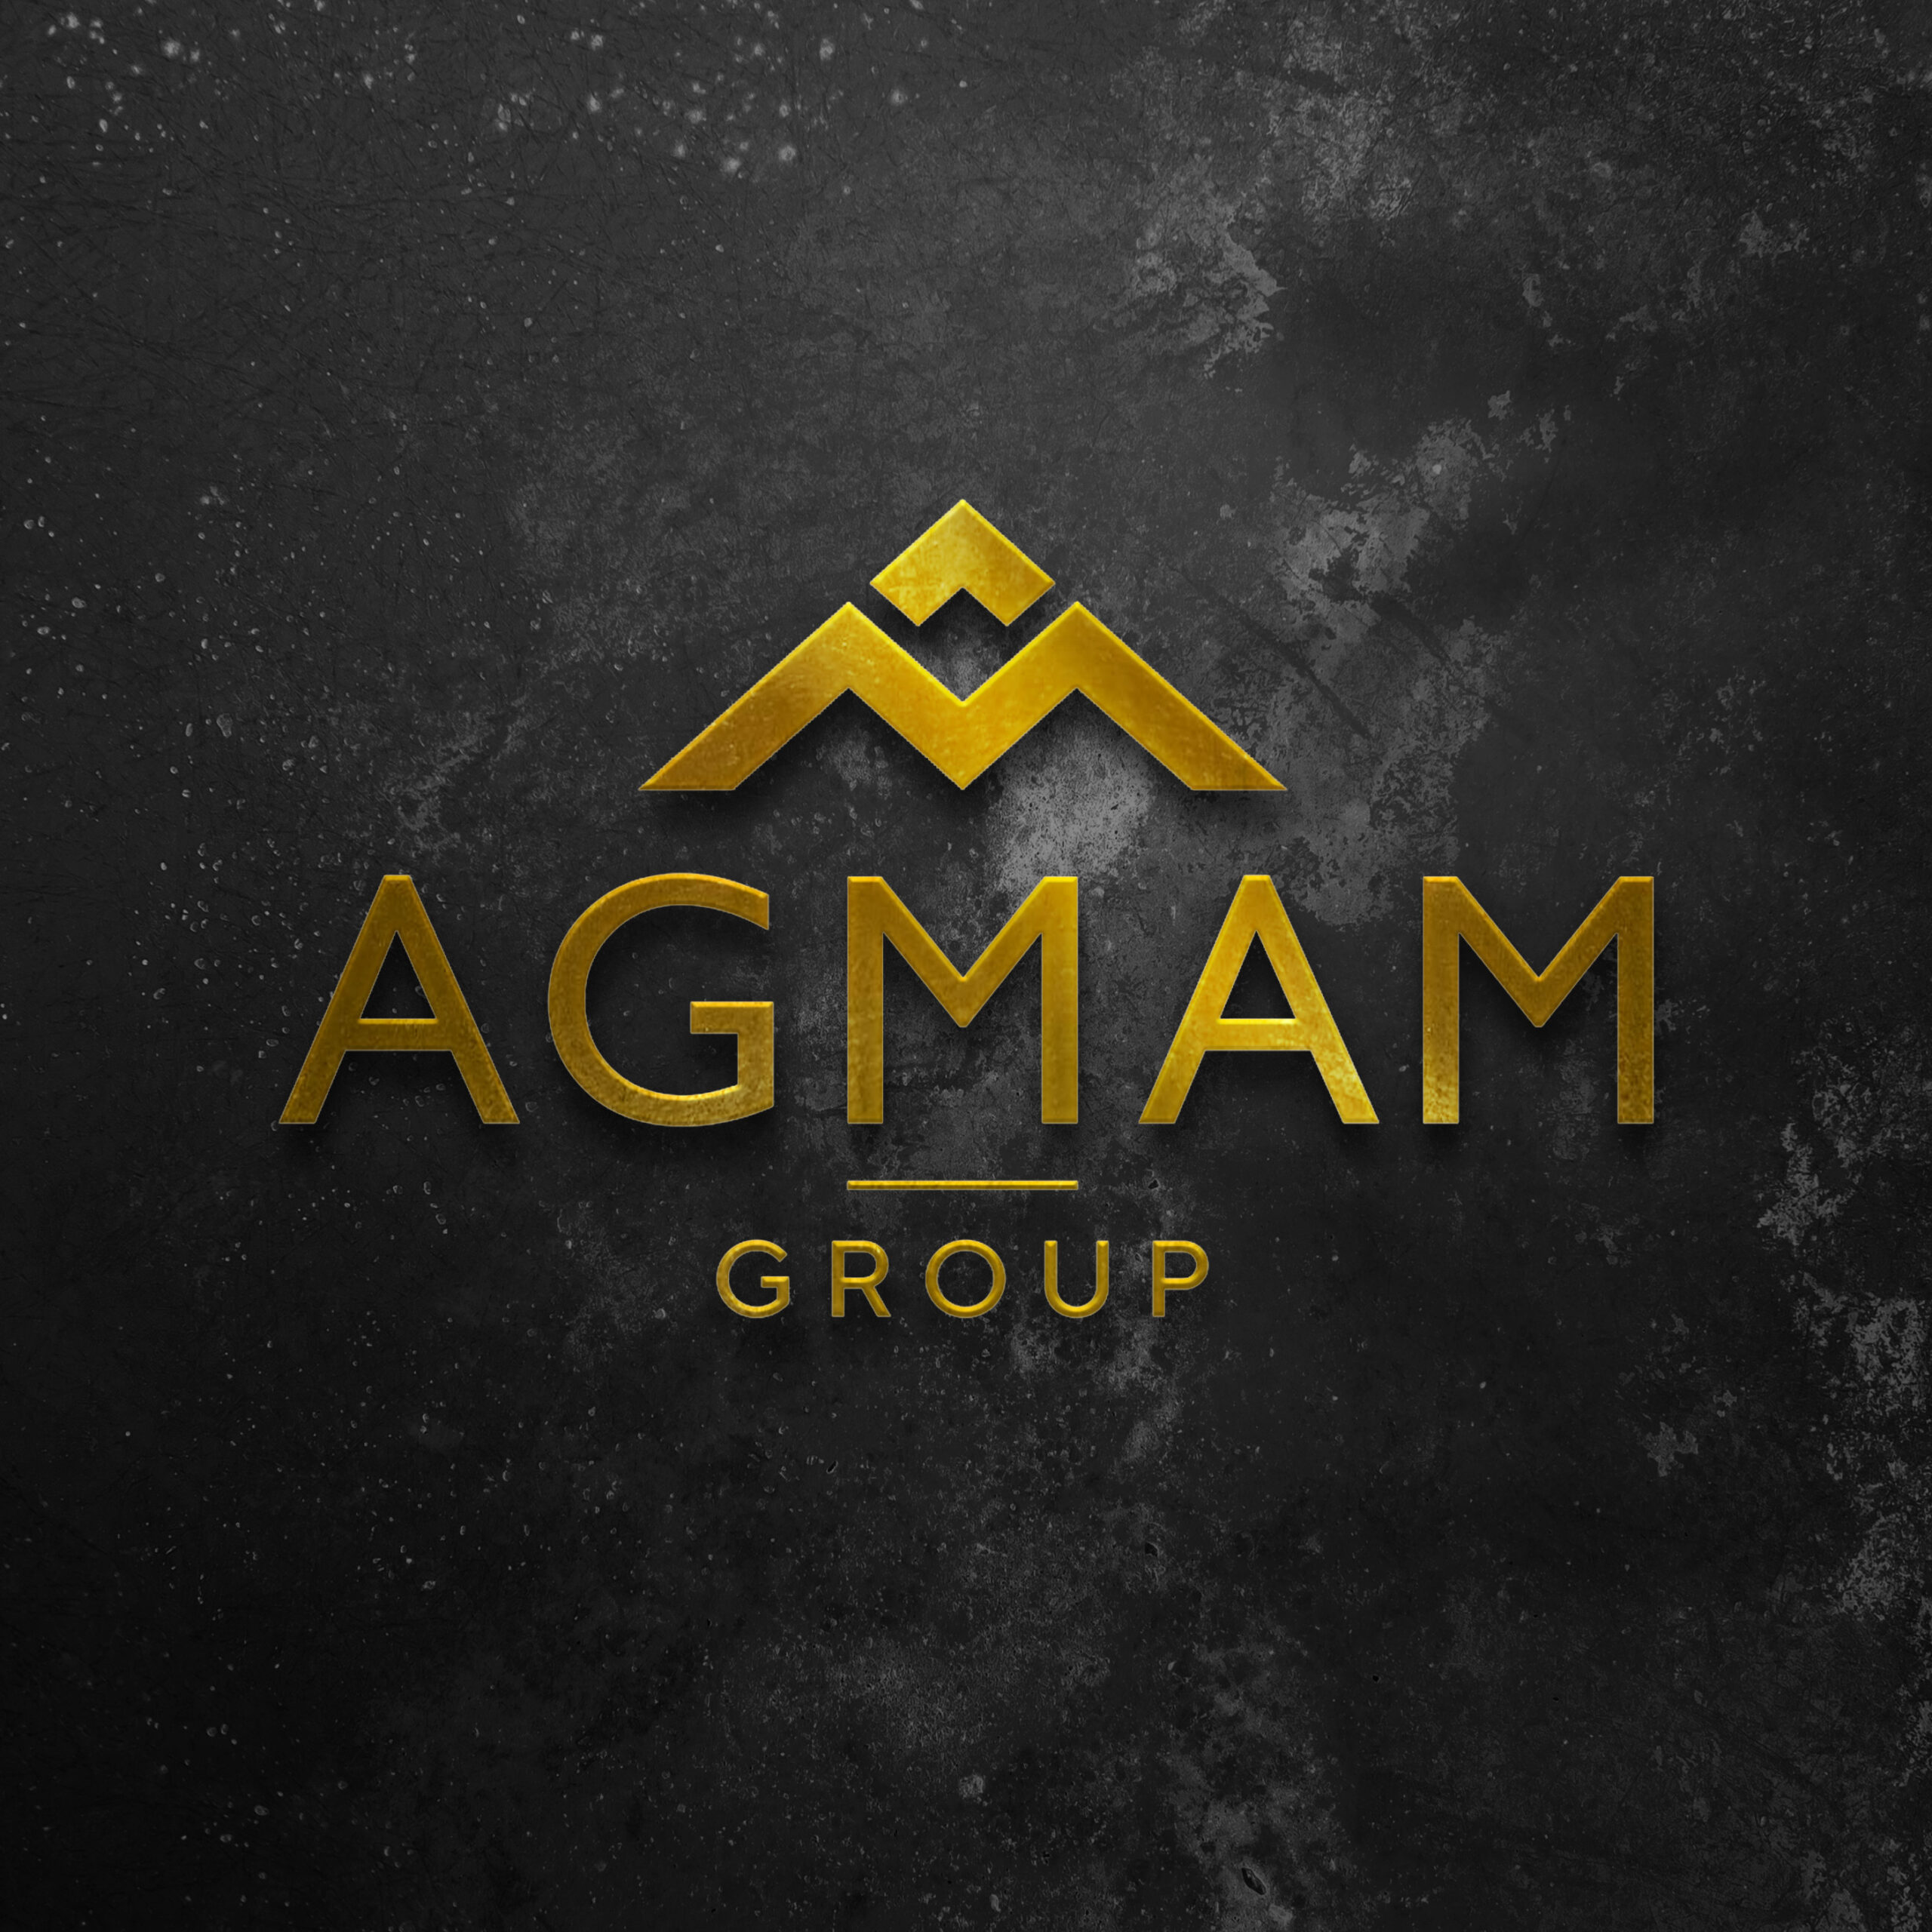 AGMAM Group